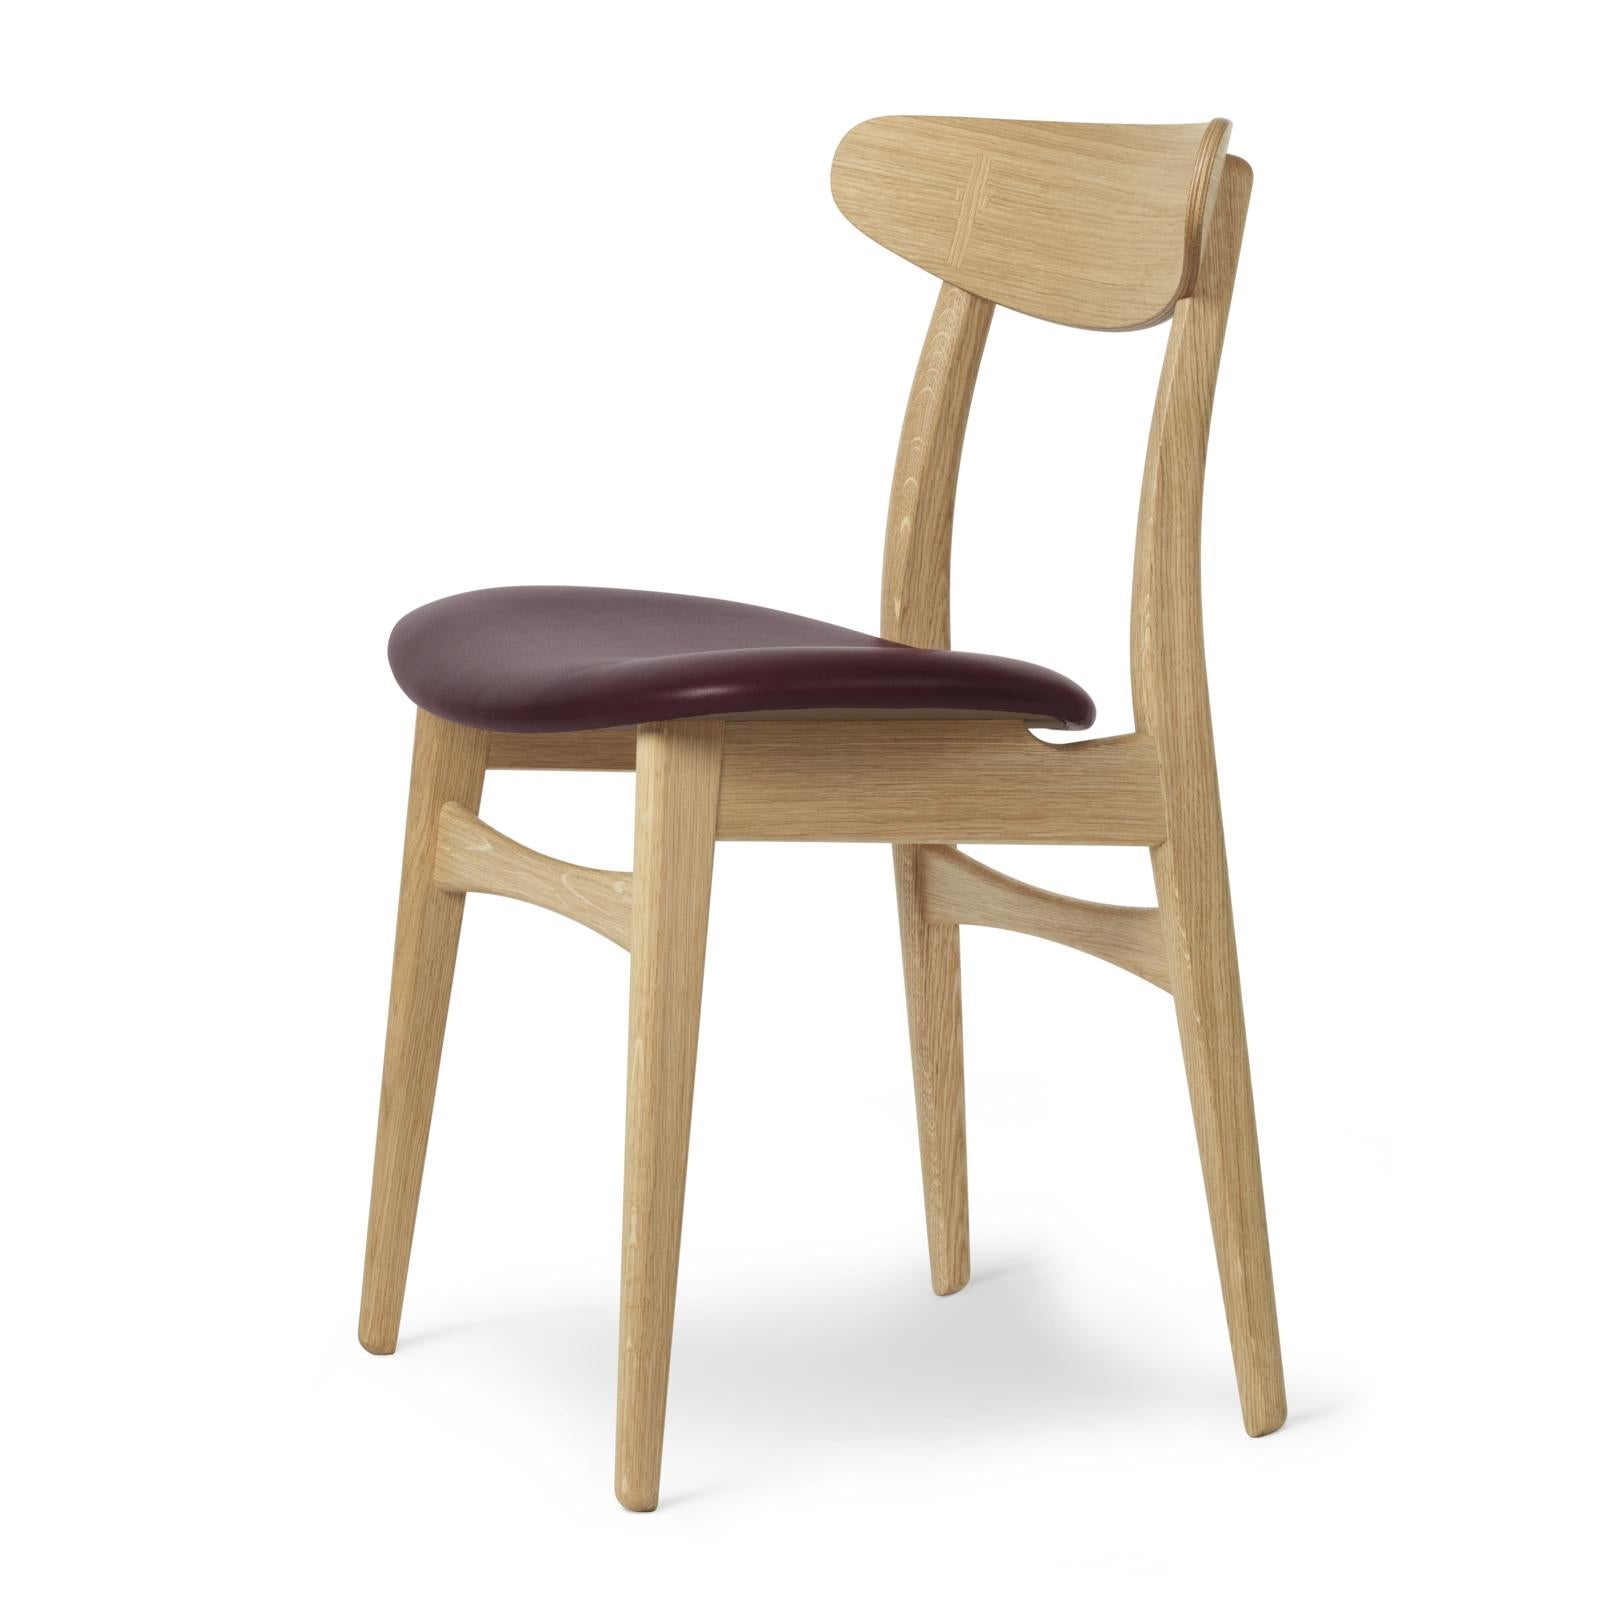 Carl Hansen CH30P -stol, olieret eg, bordeaux læder